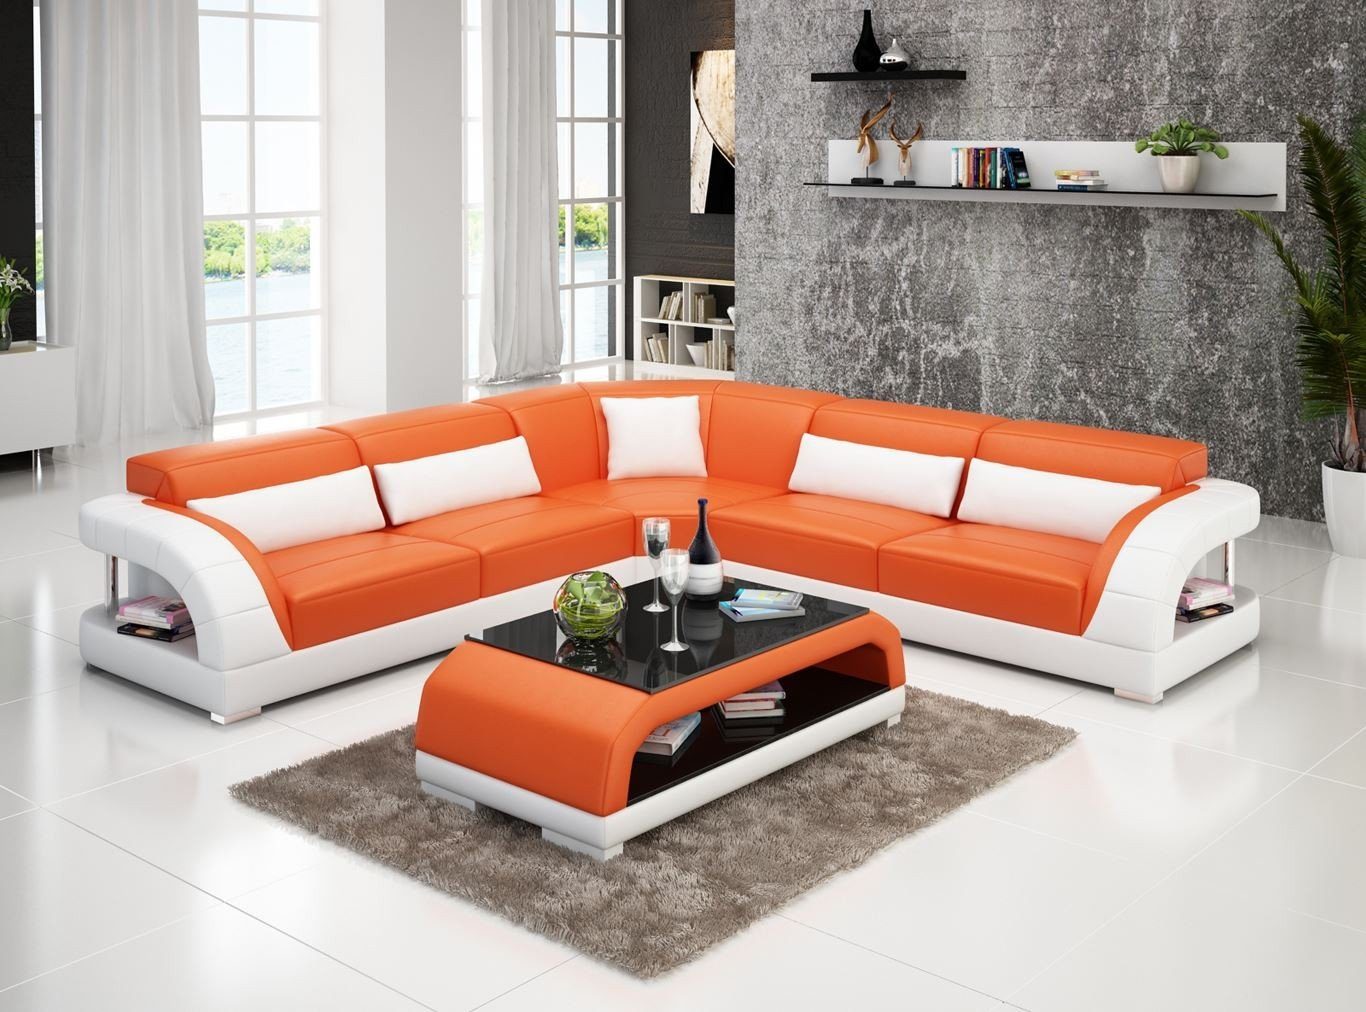 JVmoebel Ecksofa Couch Ecksofa Leder Wohnlandschaft Garnitur Design Modern, Made in Europe Orange/Weiß